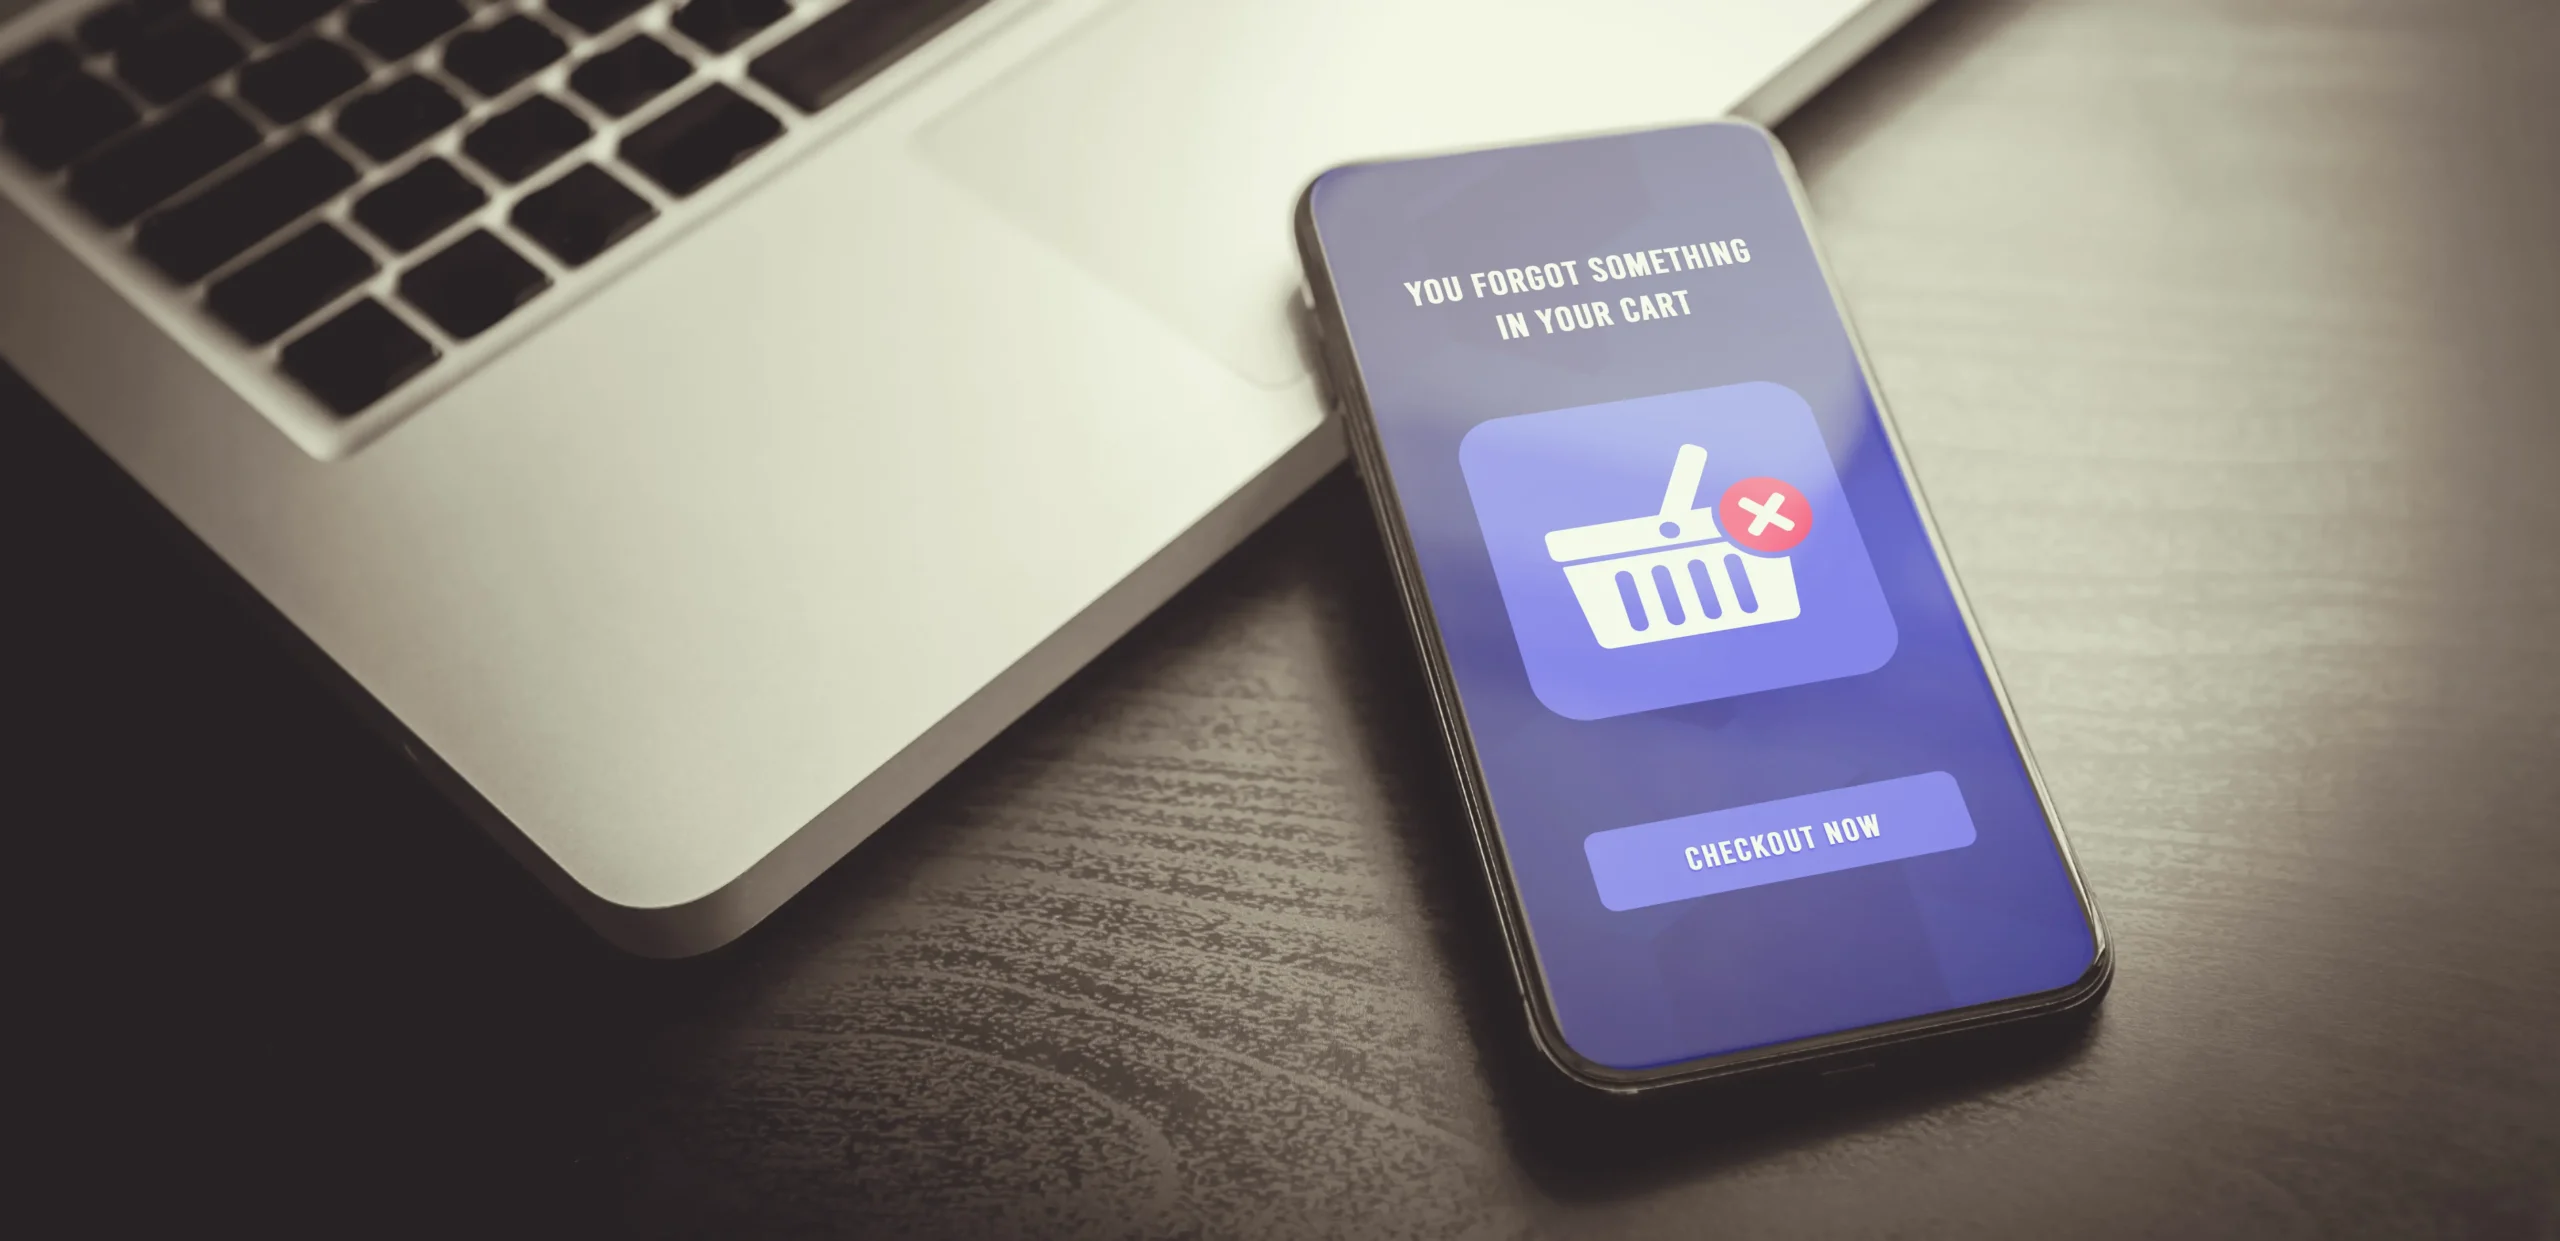 Carrelli abbandonati: come gestire al meglio gli online shopping cart